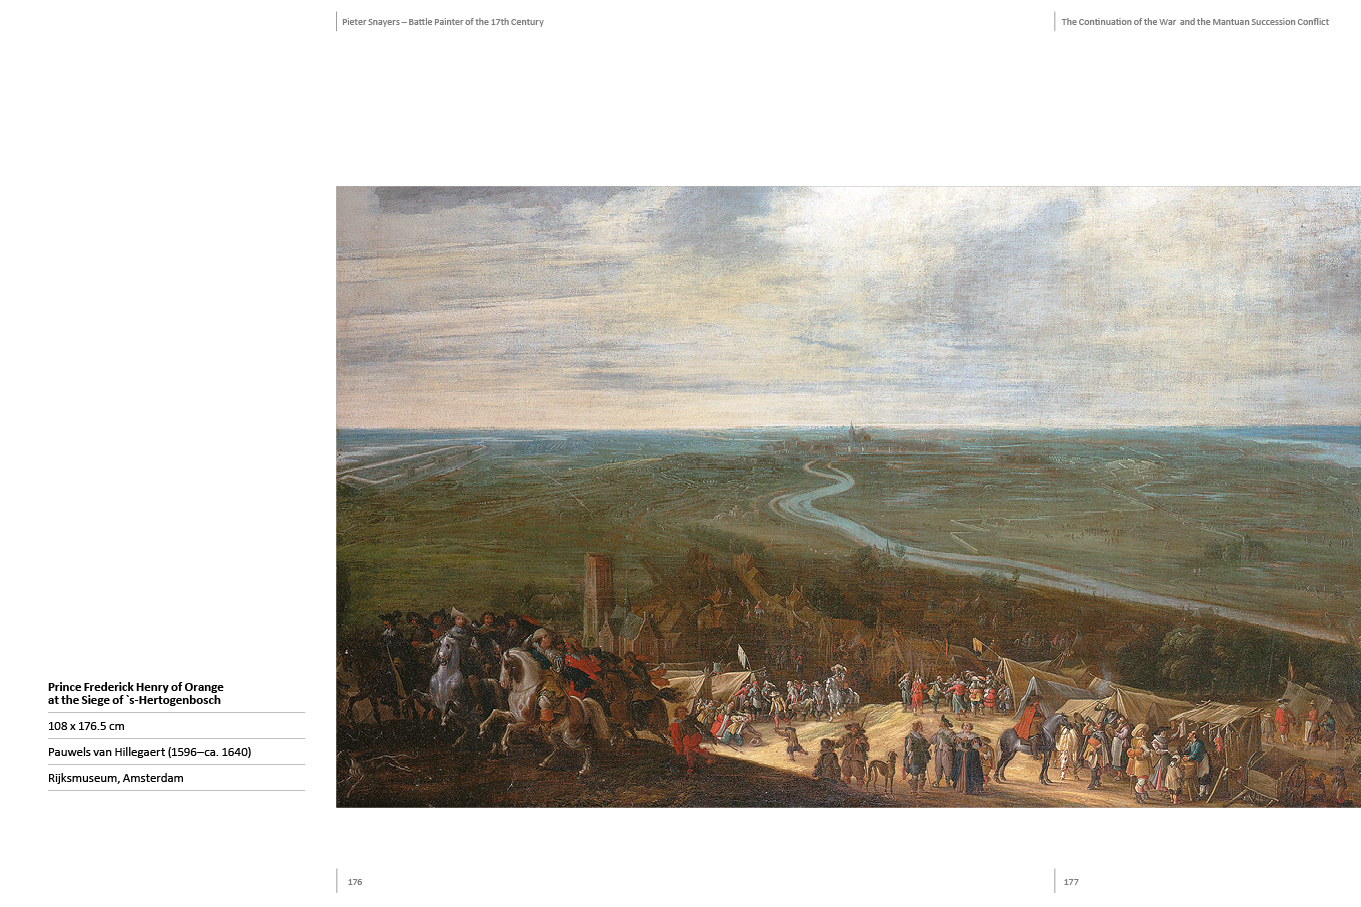 Bild: 9783963600081 | Pieter Snayers | Battle Painter 1592-1667 | Roland Sennewald (u. a.)